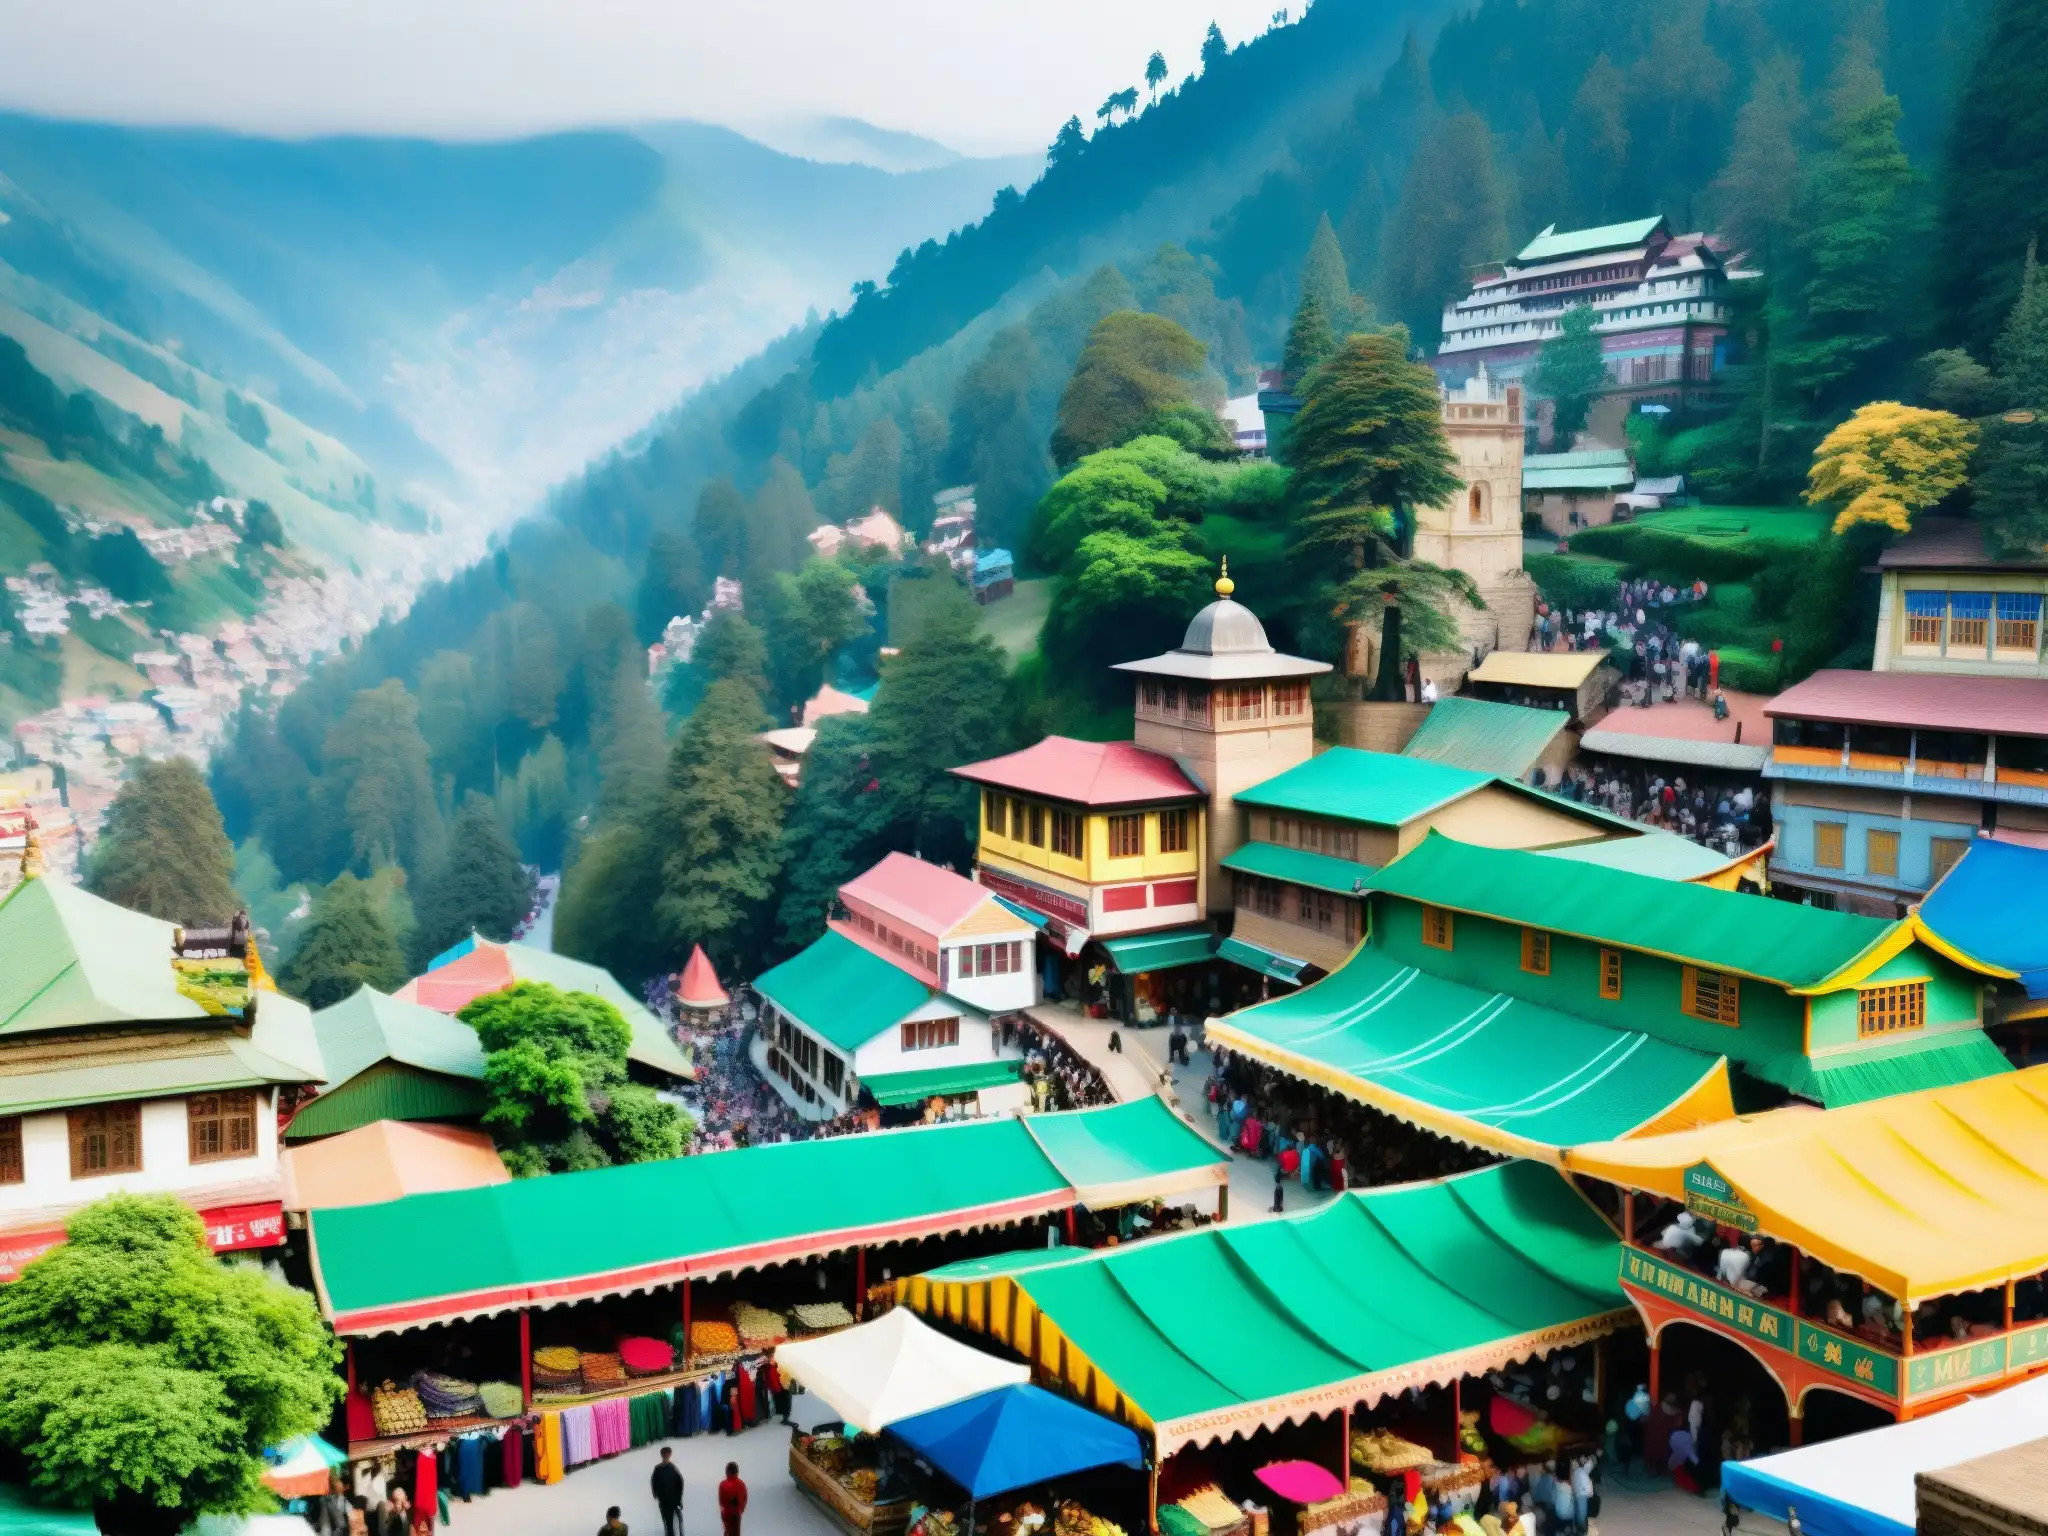 Un bullicioso pasaje en Shimla, India, lleno de puestos de mercado vibrantes y edificios coloridos